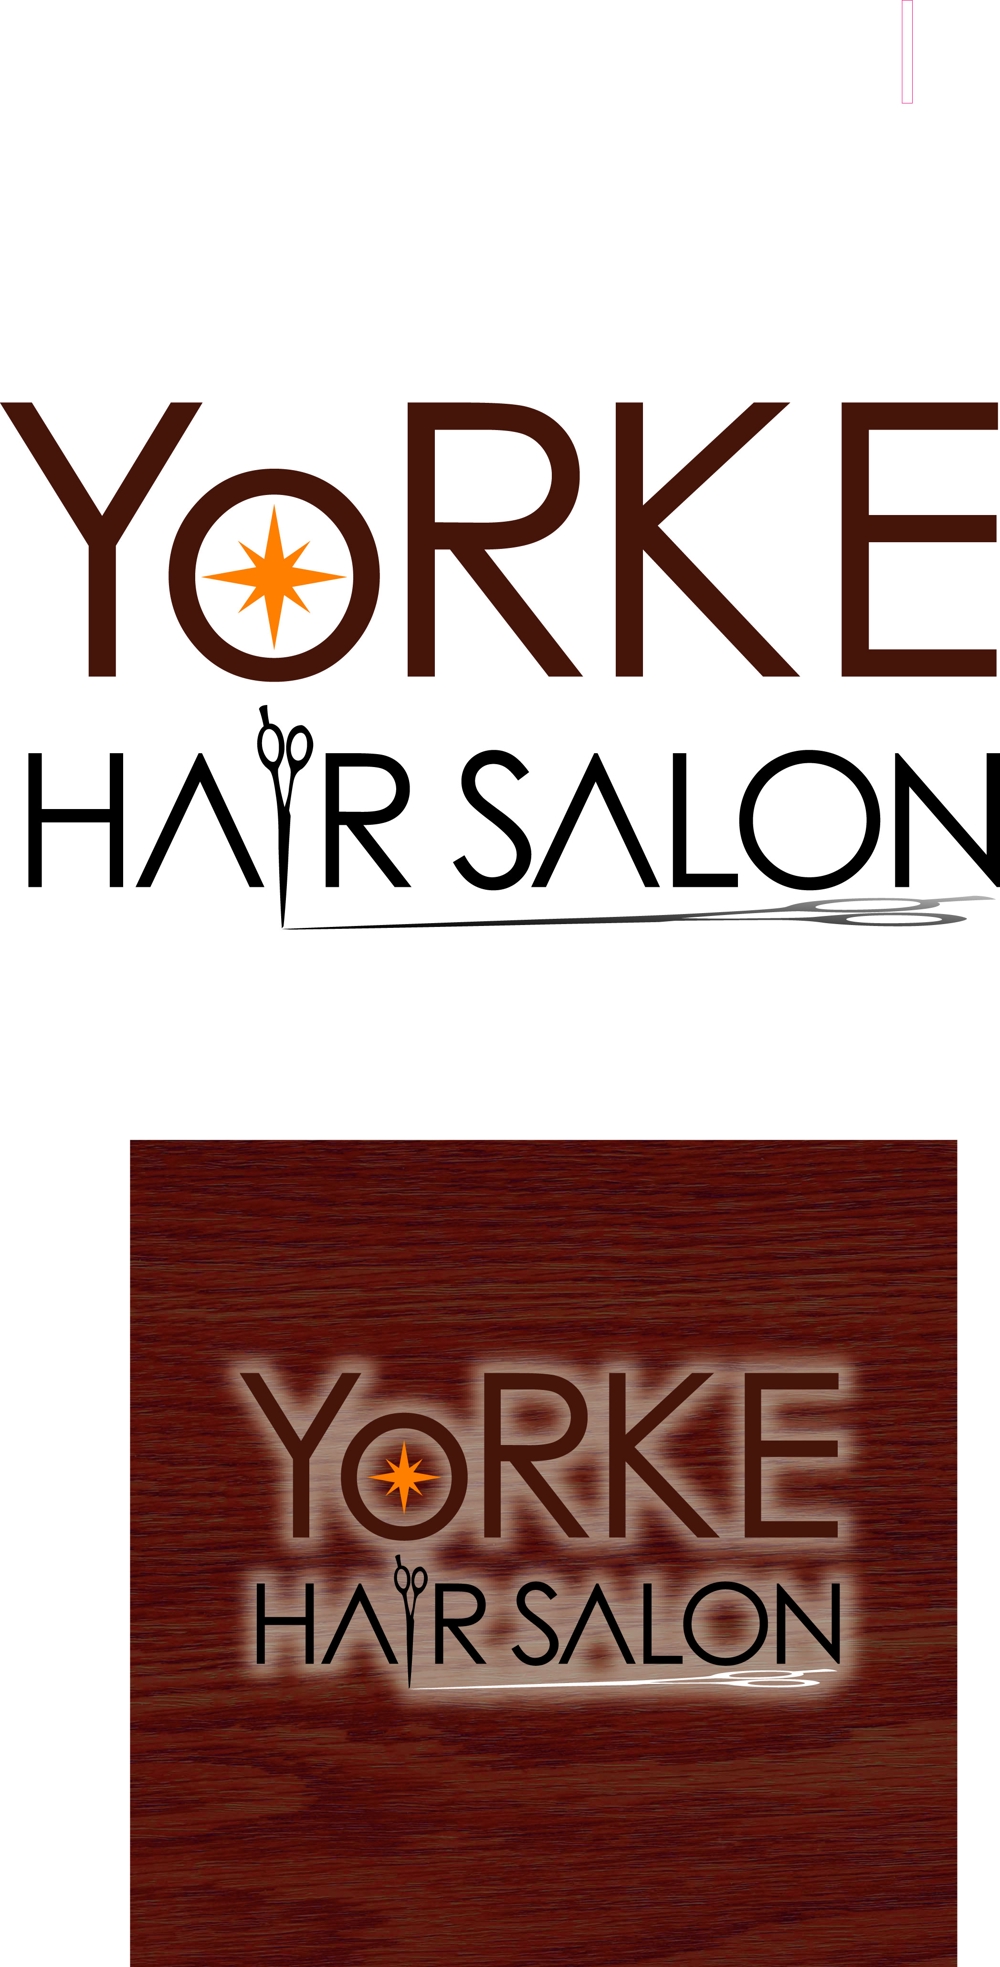 yorke hair salon_B.jpg